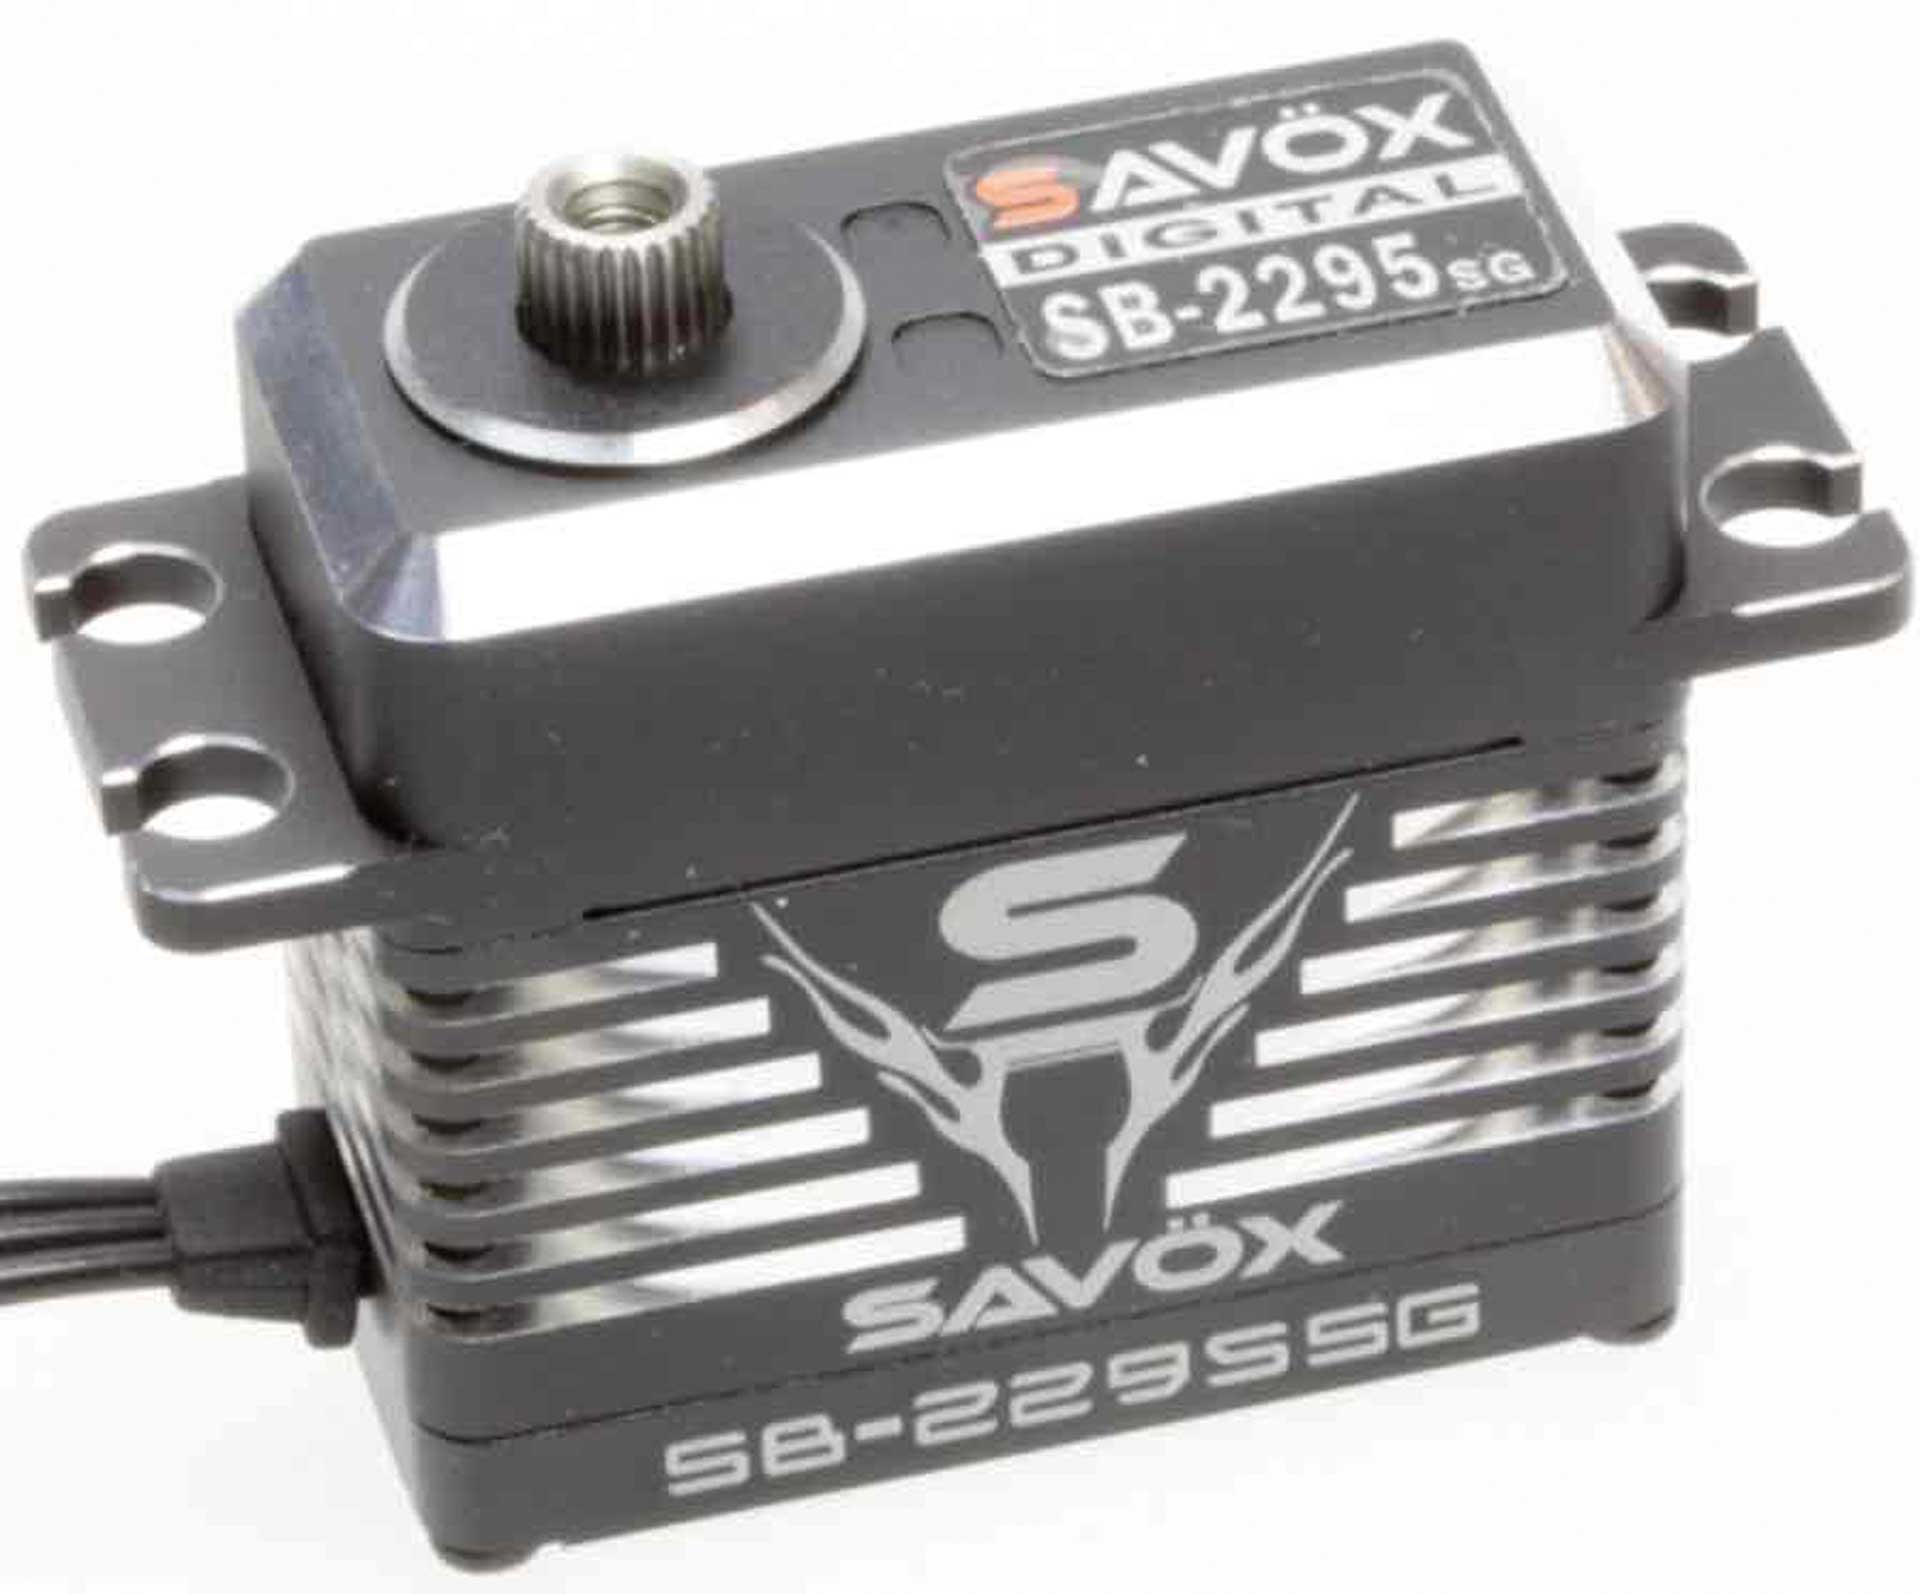 SAVÖX SB-2295SG (8,4V/40kg/0,05s) Standard Brushless Digital Servo Alugehäuse